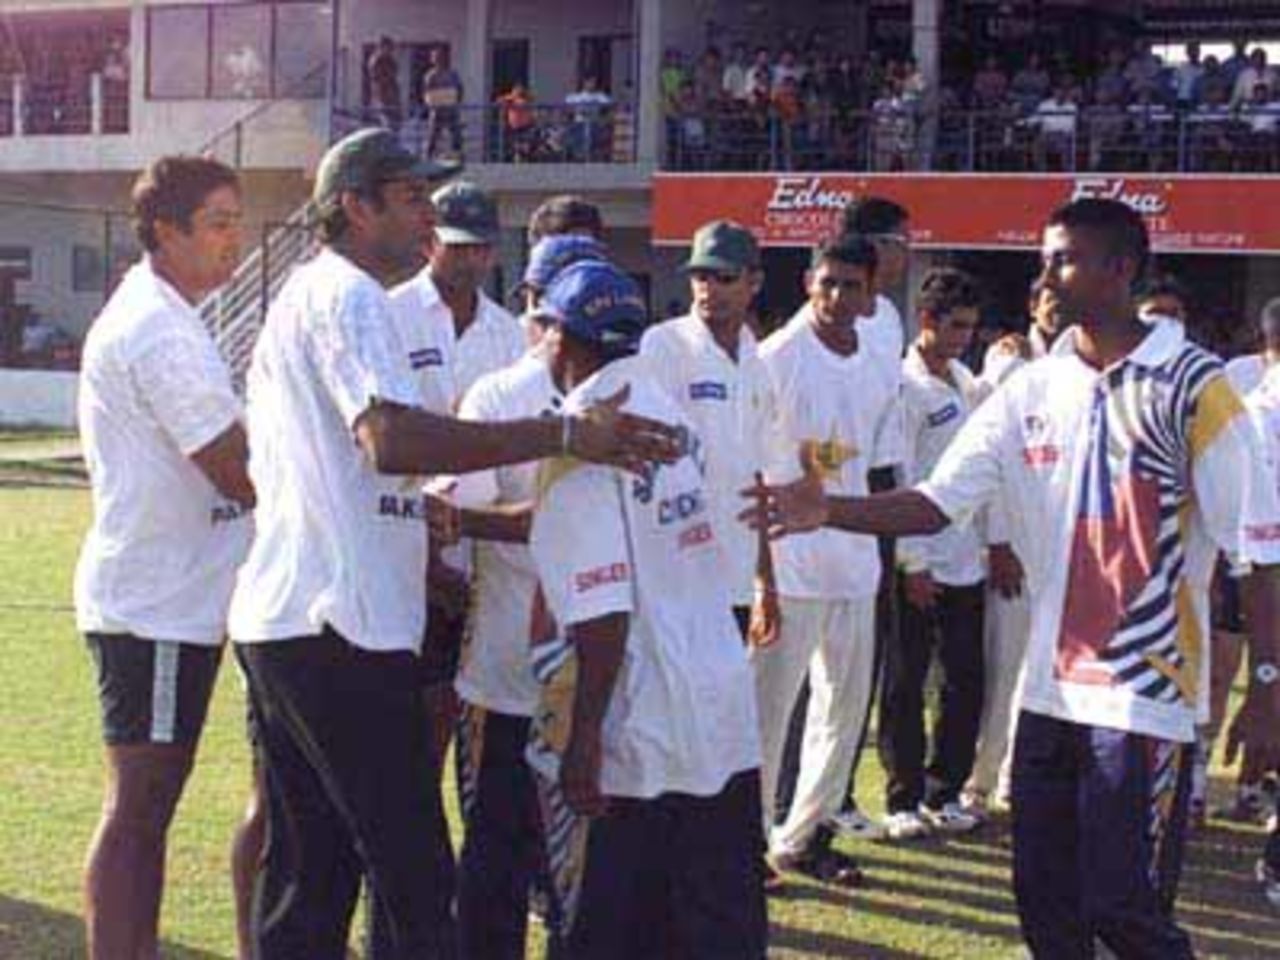 Sportsmanship prevails, Pakistan v Sri Lanka, 2nd Test at Galle, 21-25 June 2000